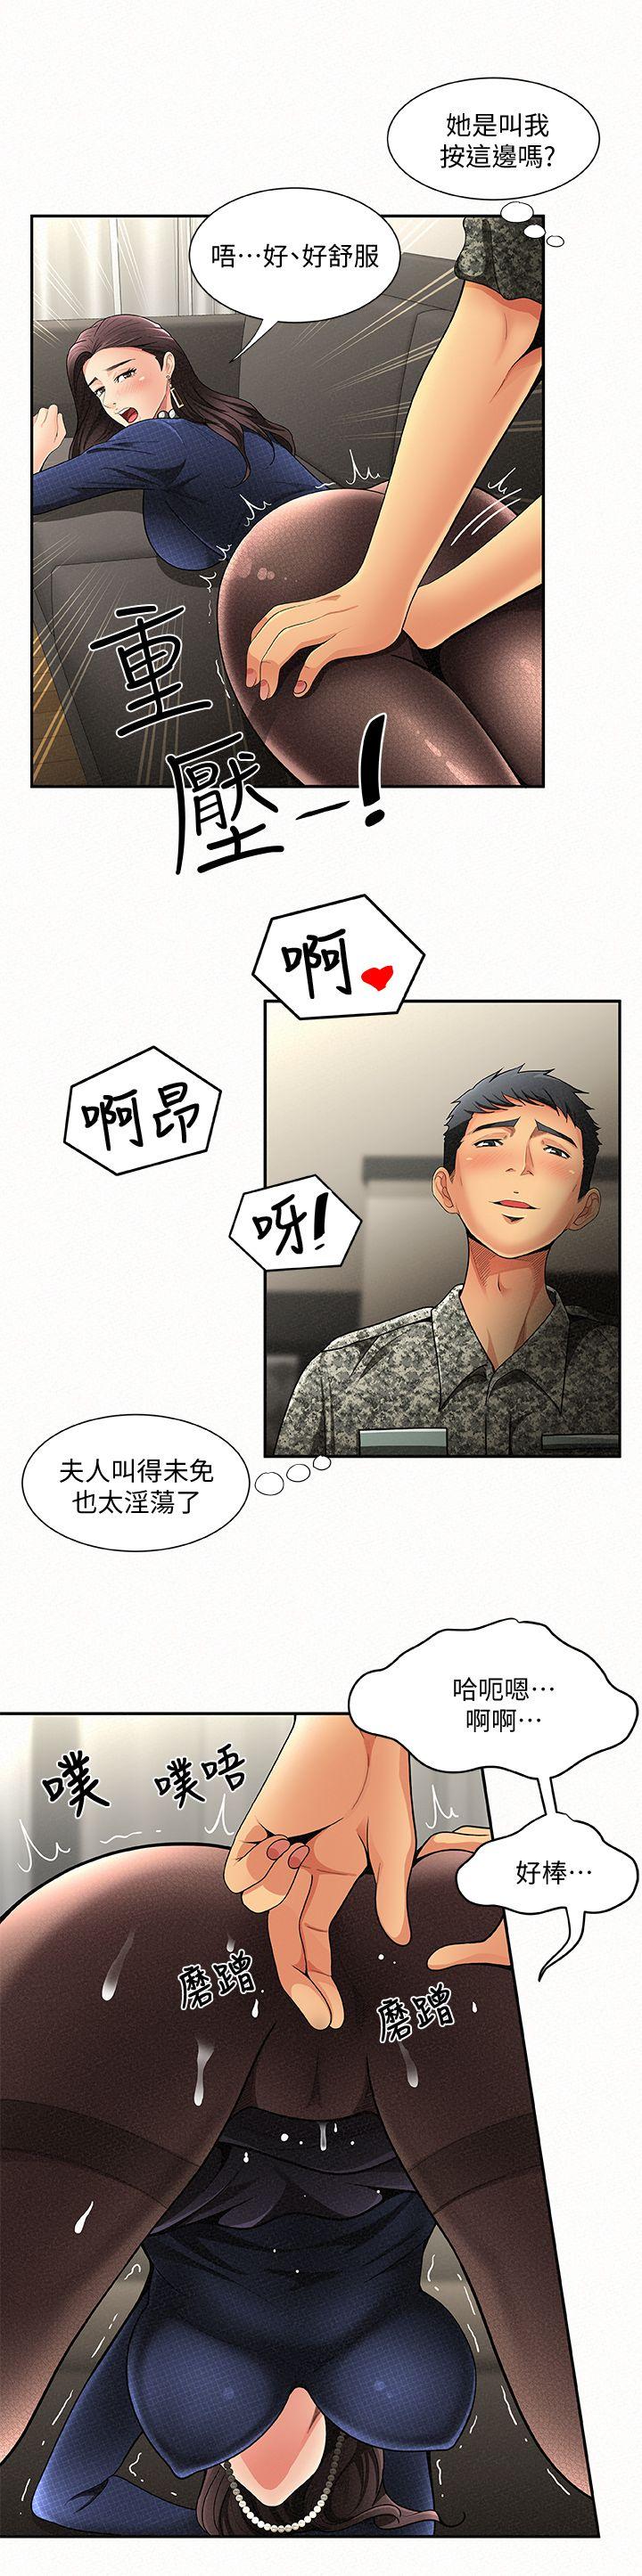 韩国污漫画 報告夫人 第2话-美艳夫人的诱惑 1